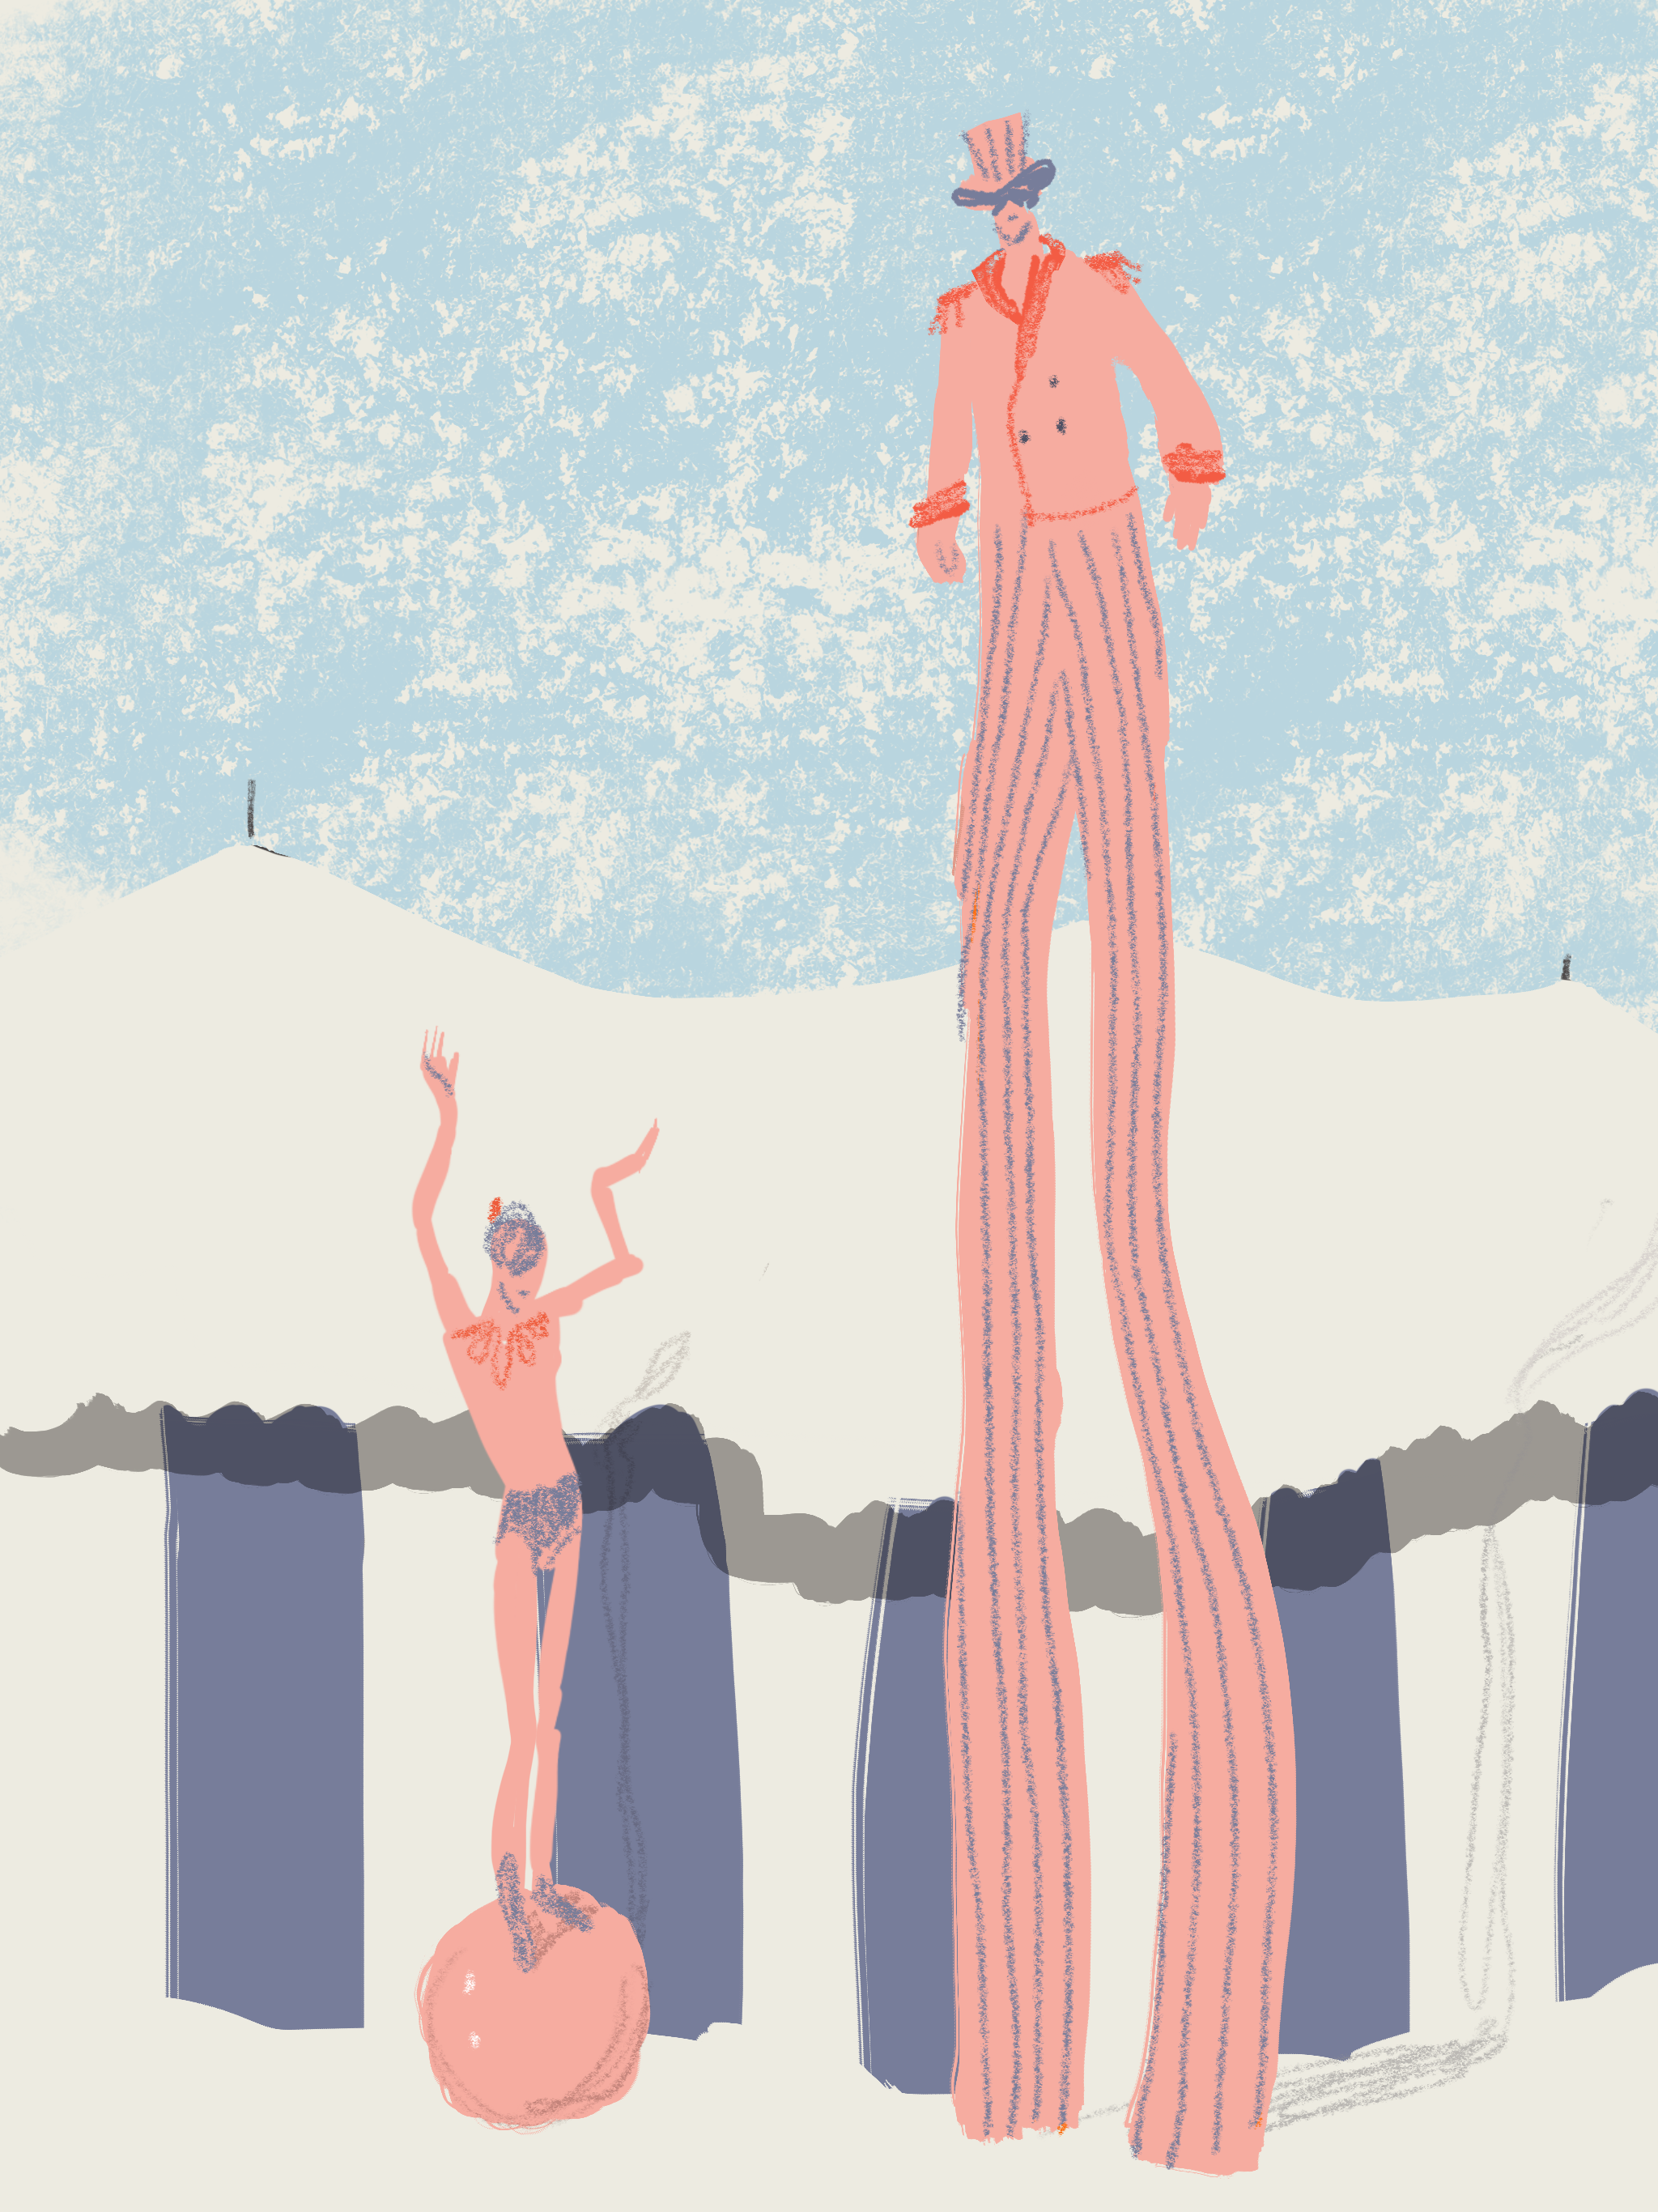 Trampoliere e giovane acrobata | Open Toe illustration